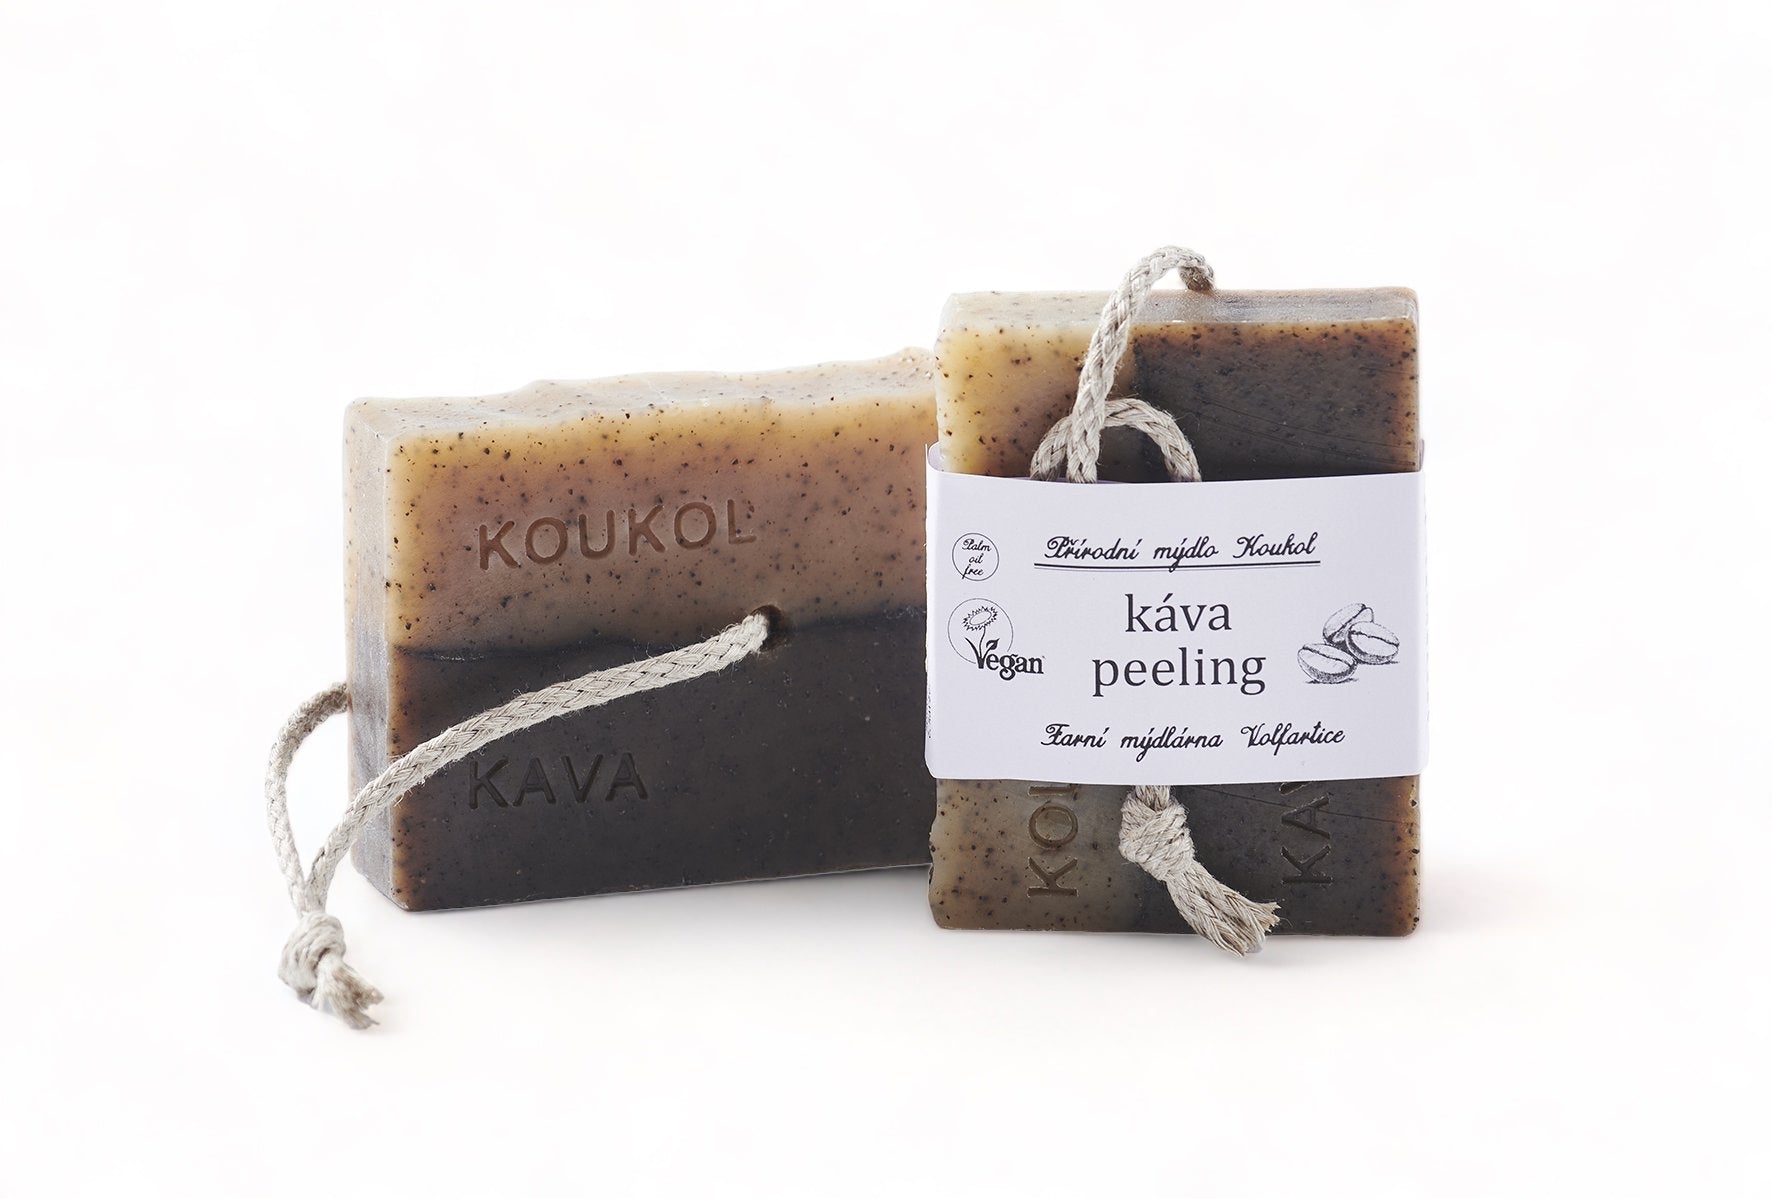 Mýdlárna Koukol Tuhé mýdlo peelingové - Káva (85 g) - pomáhá při celulitidě Mýdlárna Koukol